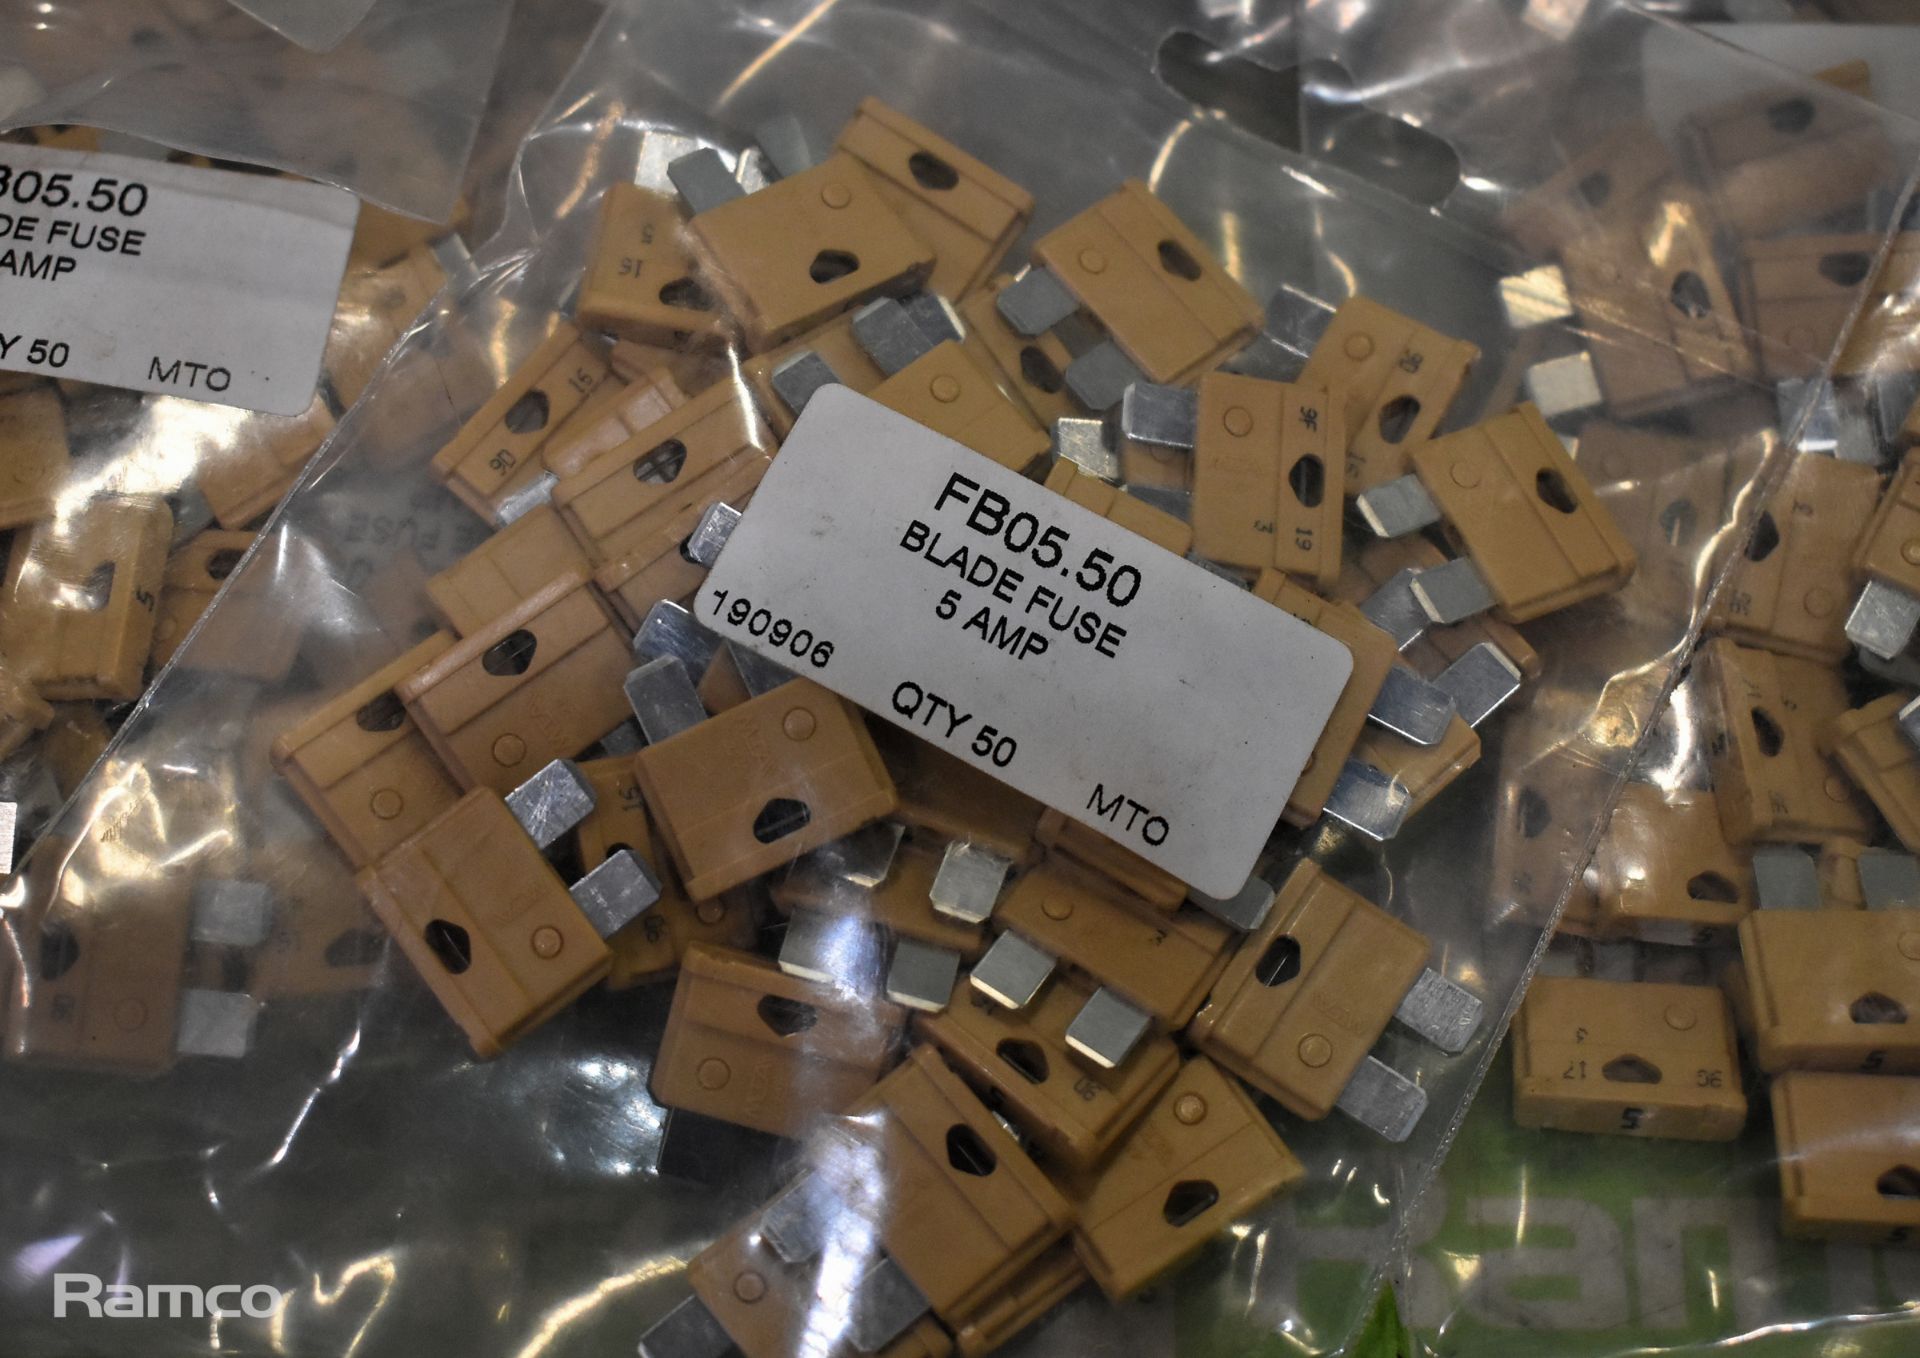 20x Packs of 50 FB05.50 5 AMP blade fuses - Bild 2 aus 3